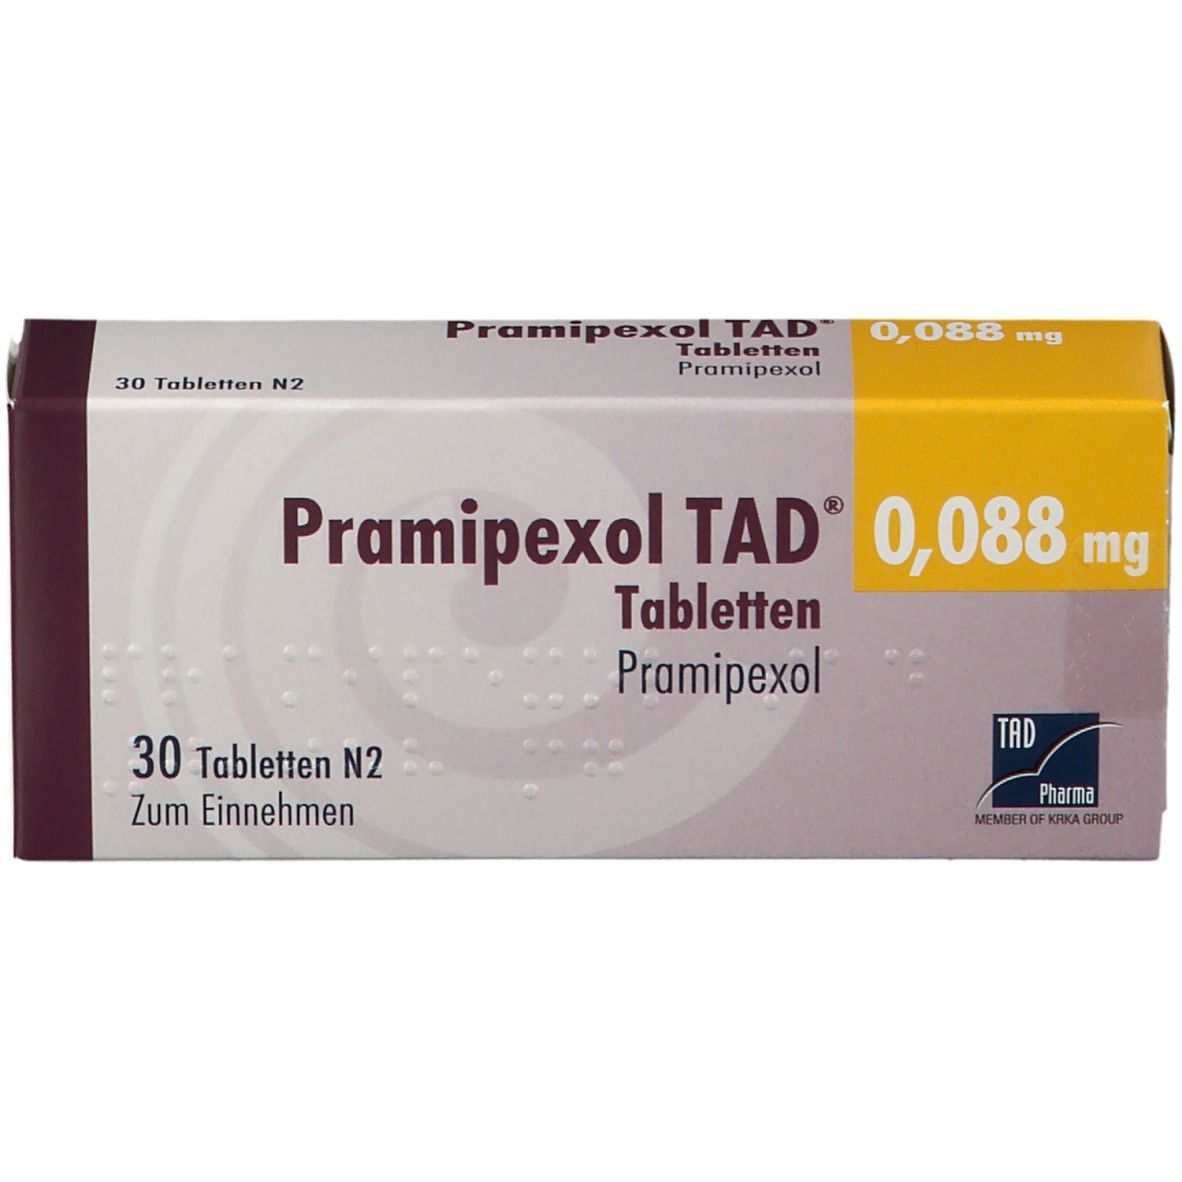 Pramipexol TAD® 0,088 mg